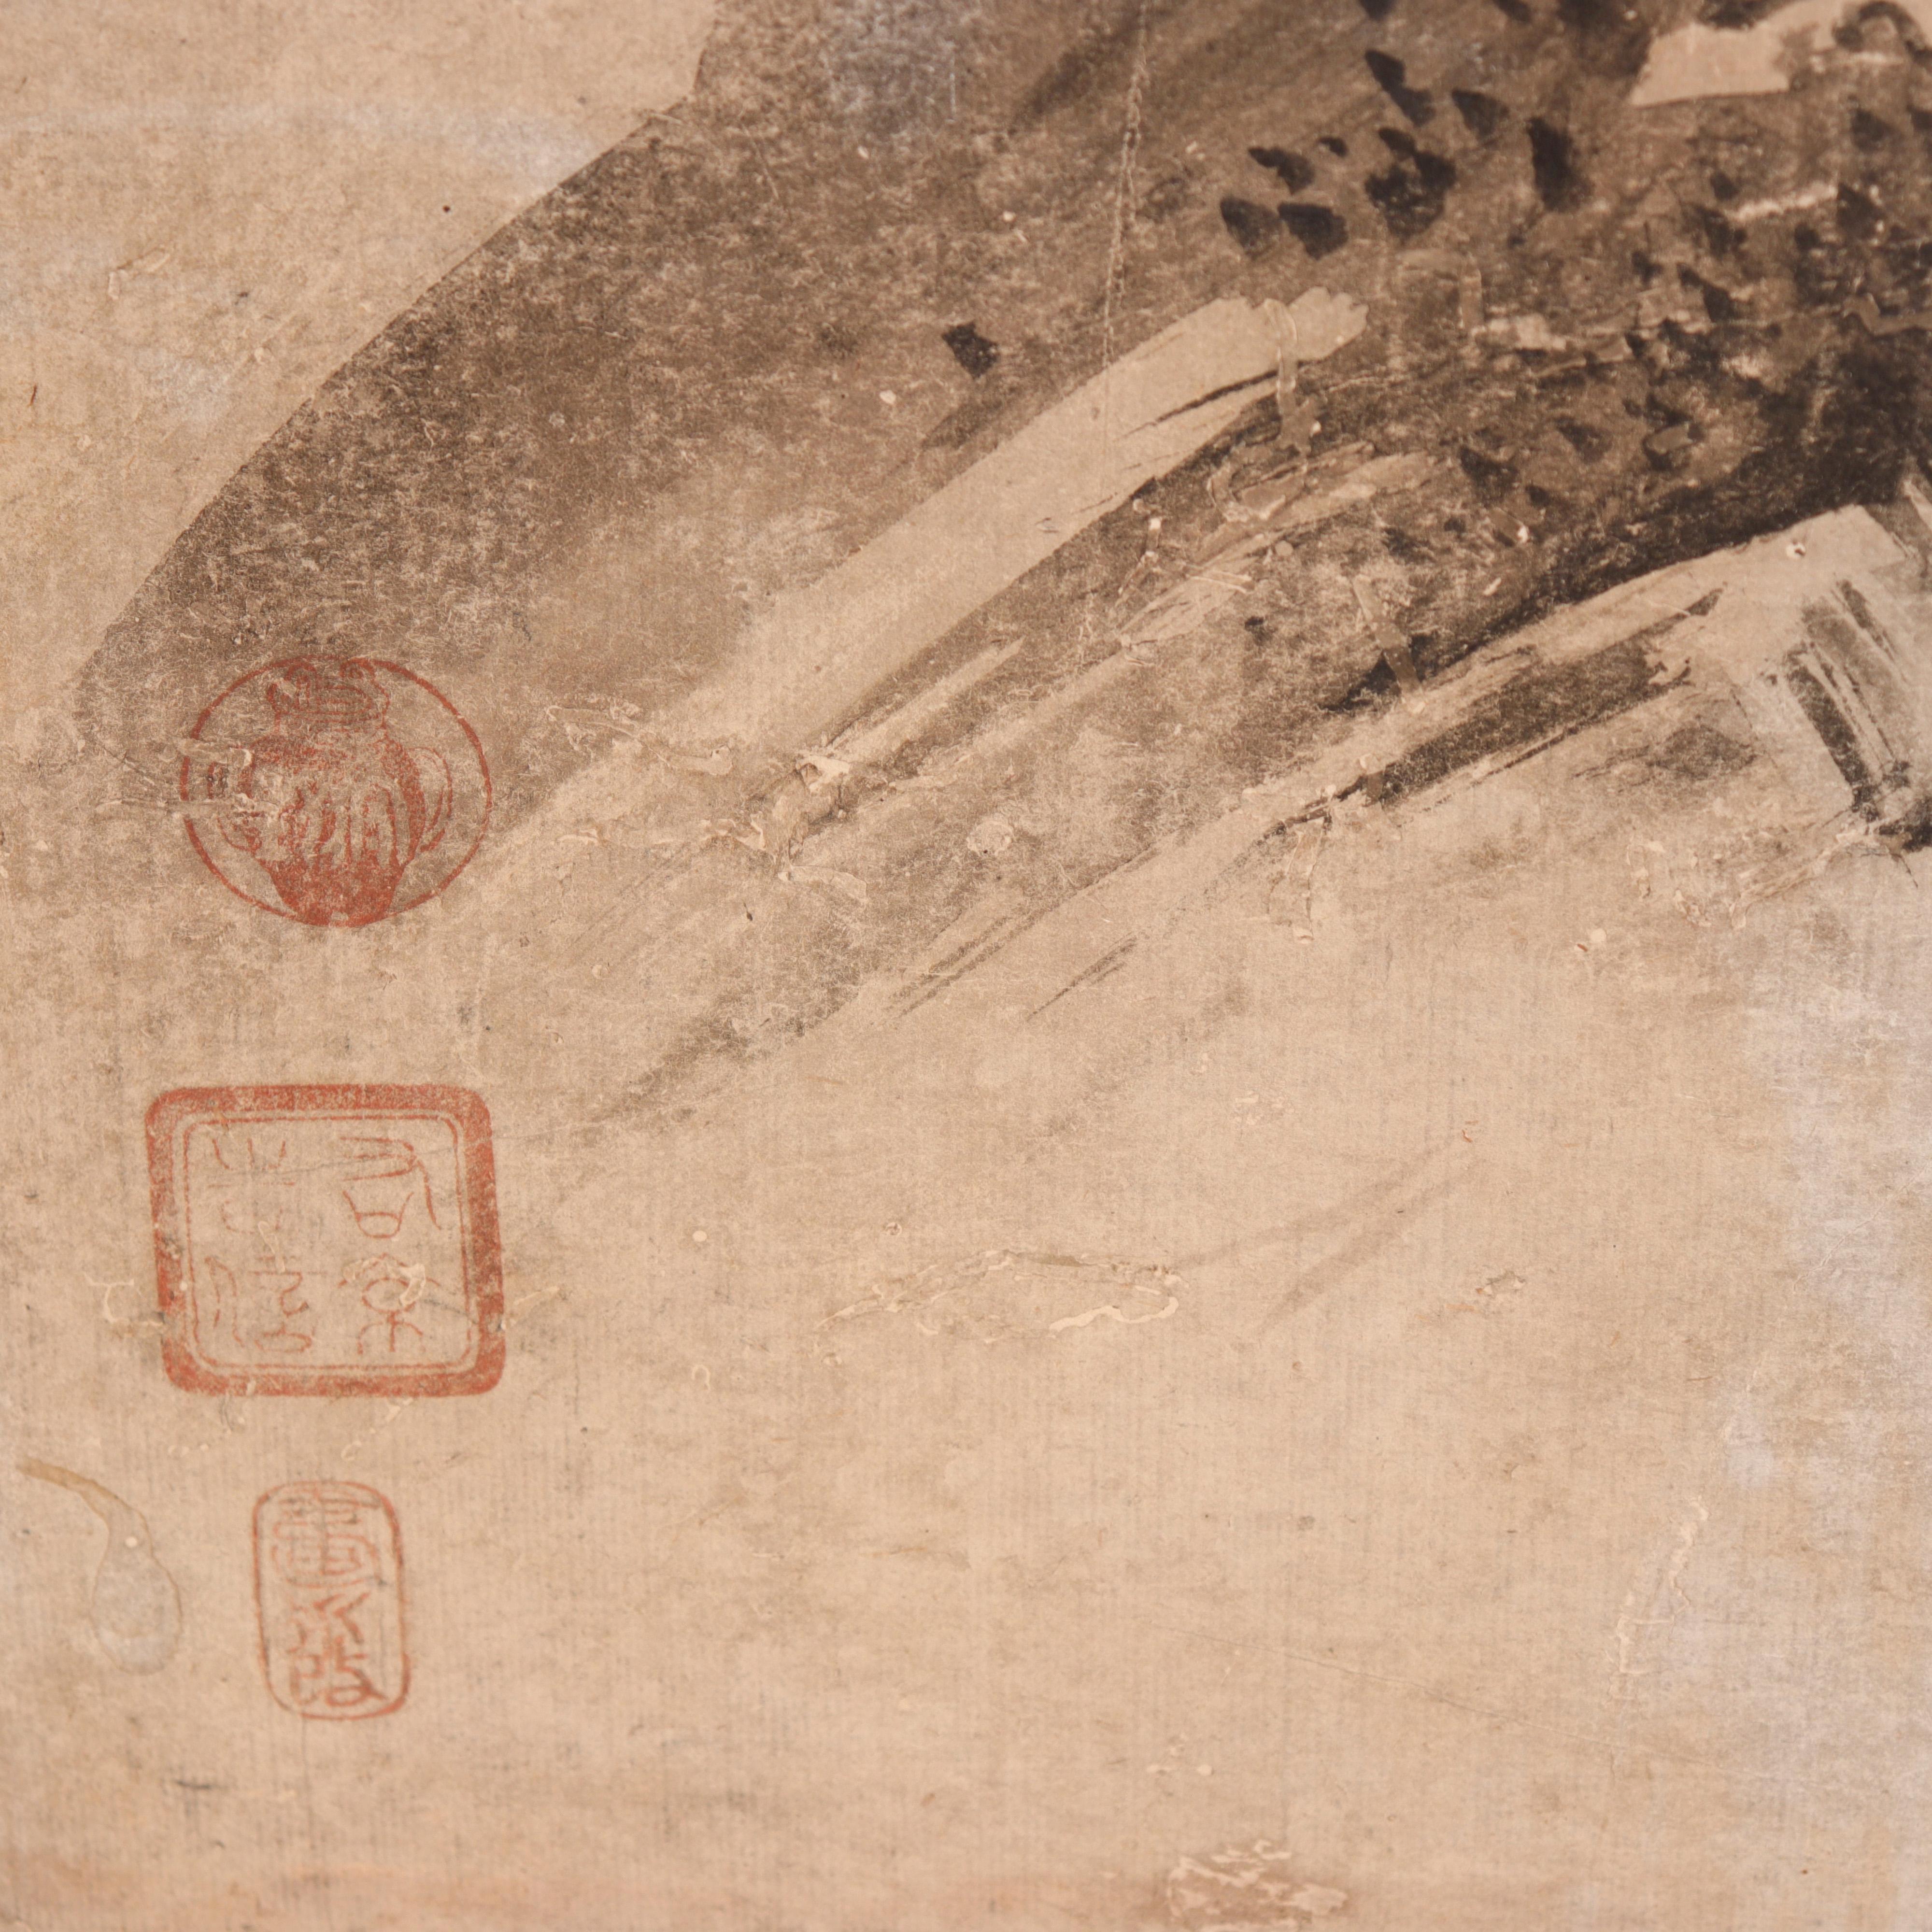 Edo Set of Four Japanese Suibokuga Ink Paintings by Kano Tokinobu, 17th Century For Sale